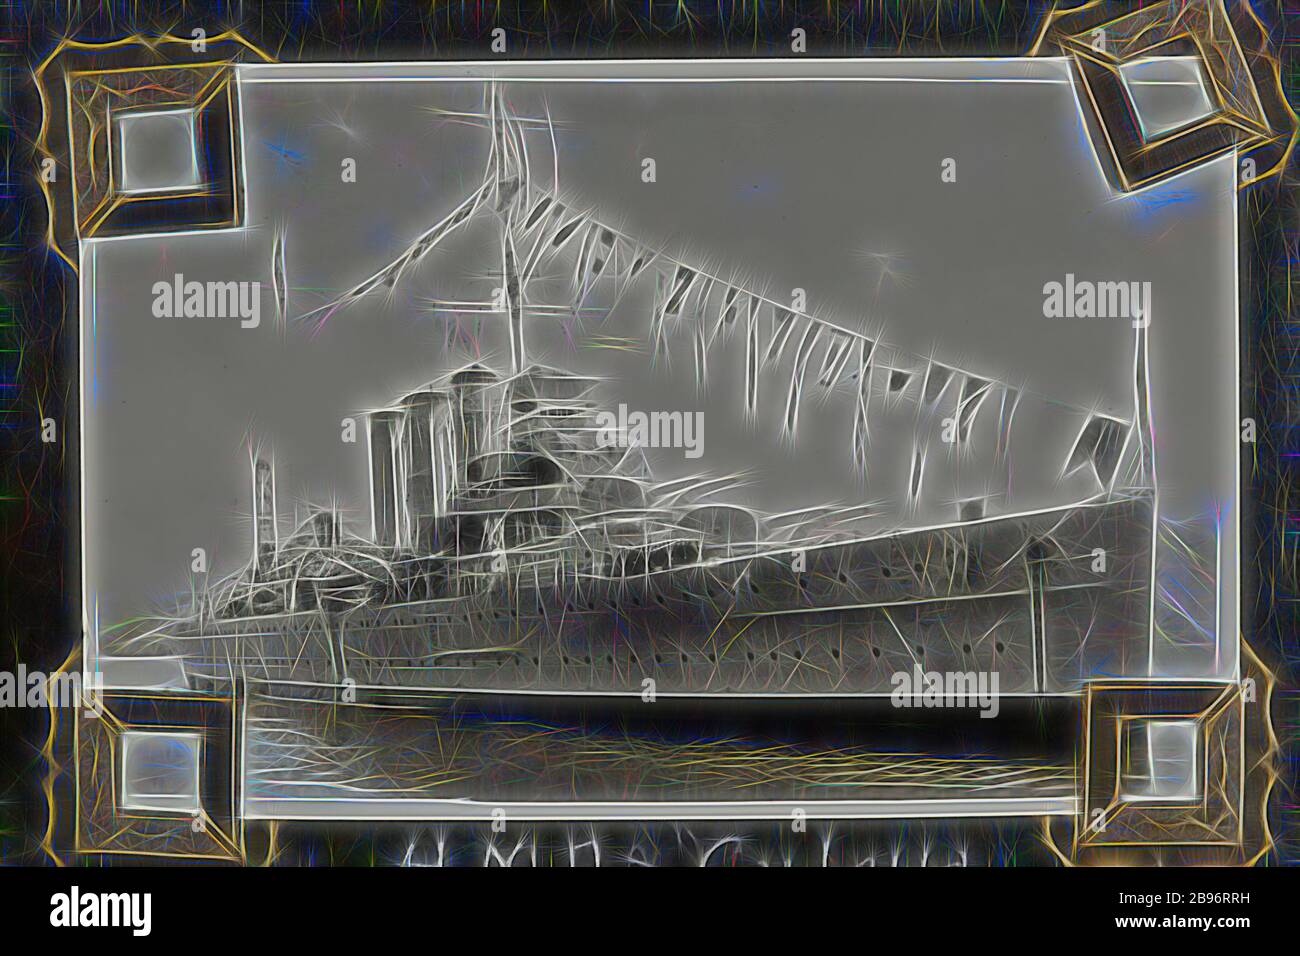 Fotografia - 'HMAS Canberra', 1937-1939, fotografia in bianco e nero di HMAS Canberra. Una delle 48 fotografie di un album fotografico. Preso da D.R.Goodwin, Royal Australian Navy (R.A. n.) 1937-1939. Le immagini sono di H.M.A.S Cerberus e di altre navi navali, addestramento navale e personale di armi da campo., Reimagined da Gibon, disegno di calore allegro di luminosità e raggi di luce radianza. Arte classica reinventata con un tocco moderno. La fotografia ispirata al futurismo, che abbraccia l'energia dinamica della tecnologia moderna, del movimento, della velocità e rivoluziona la cultura. Foto Stock